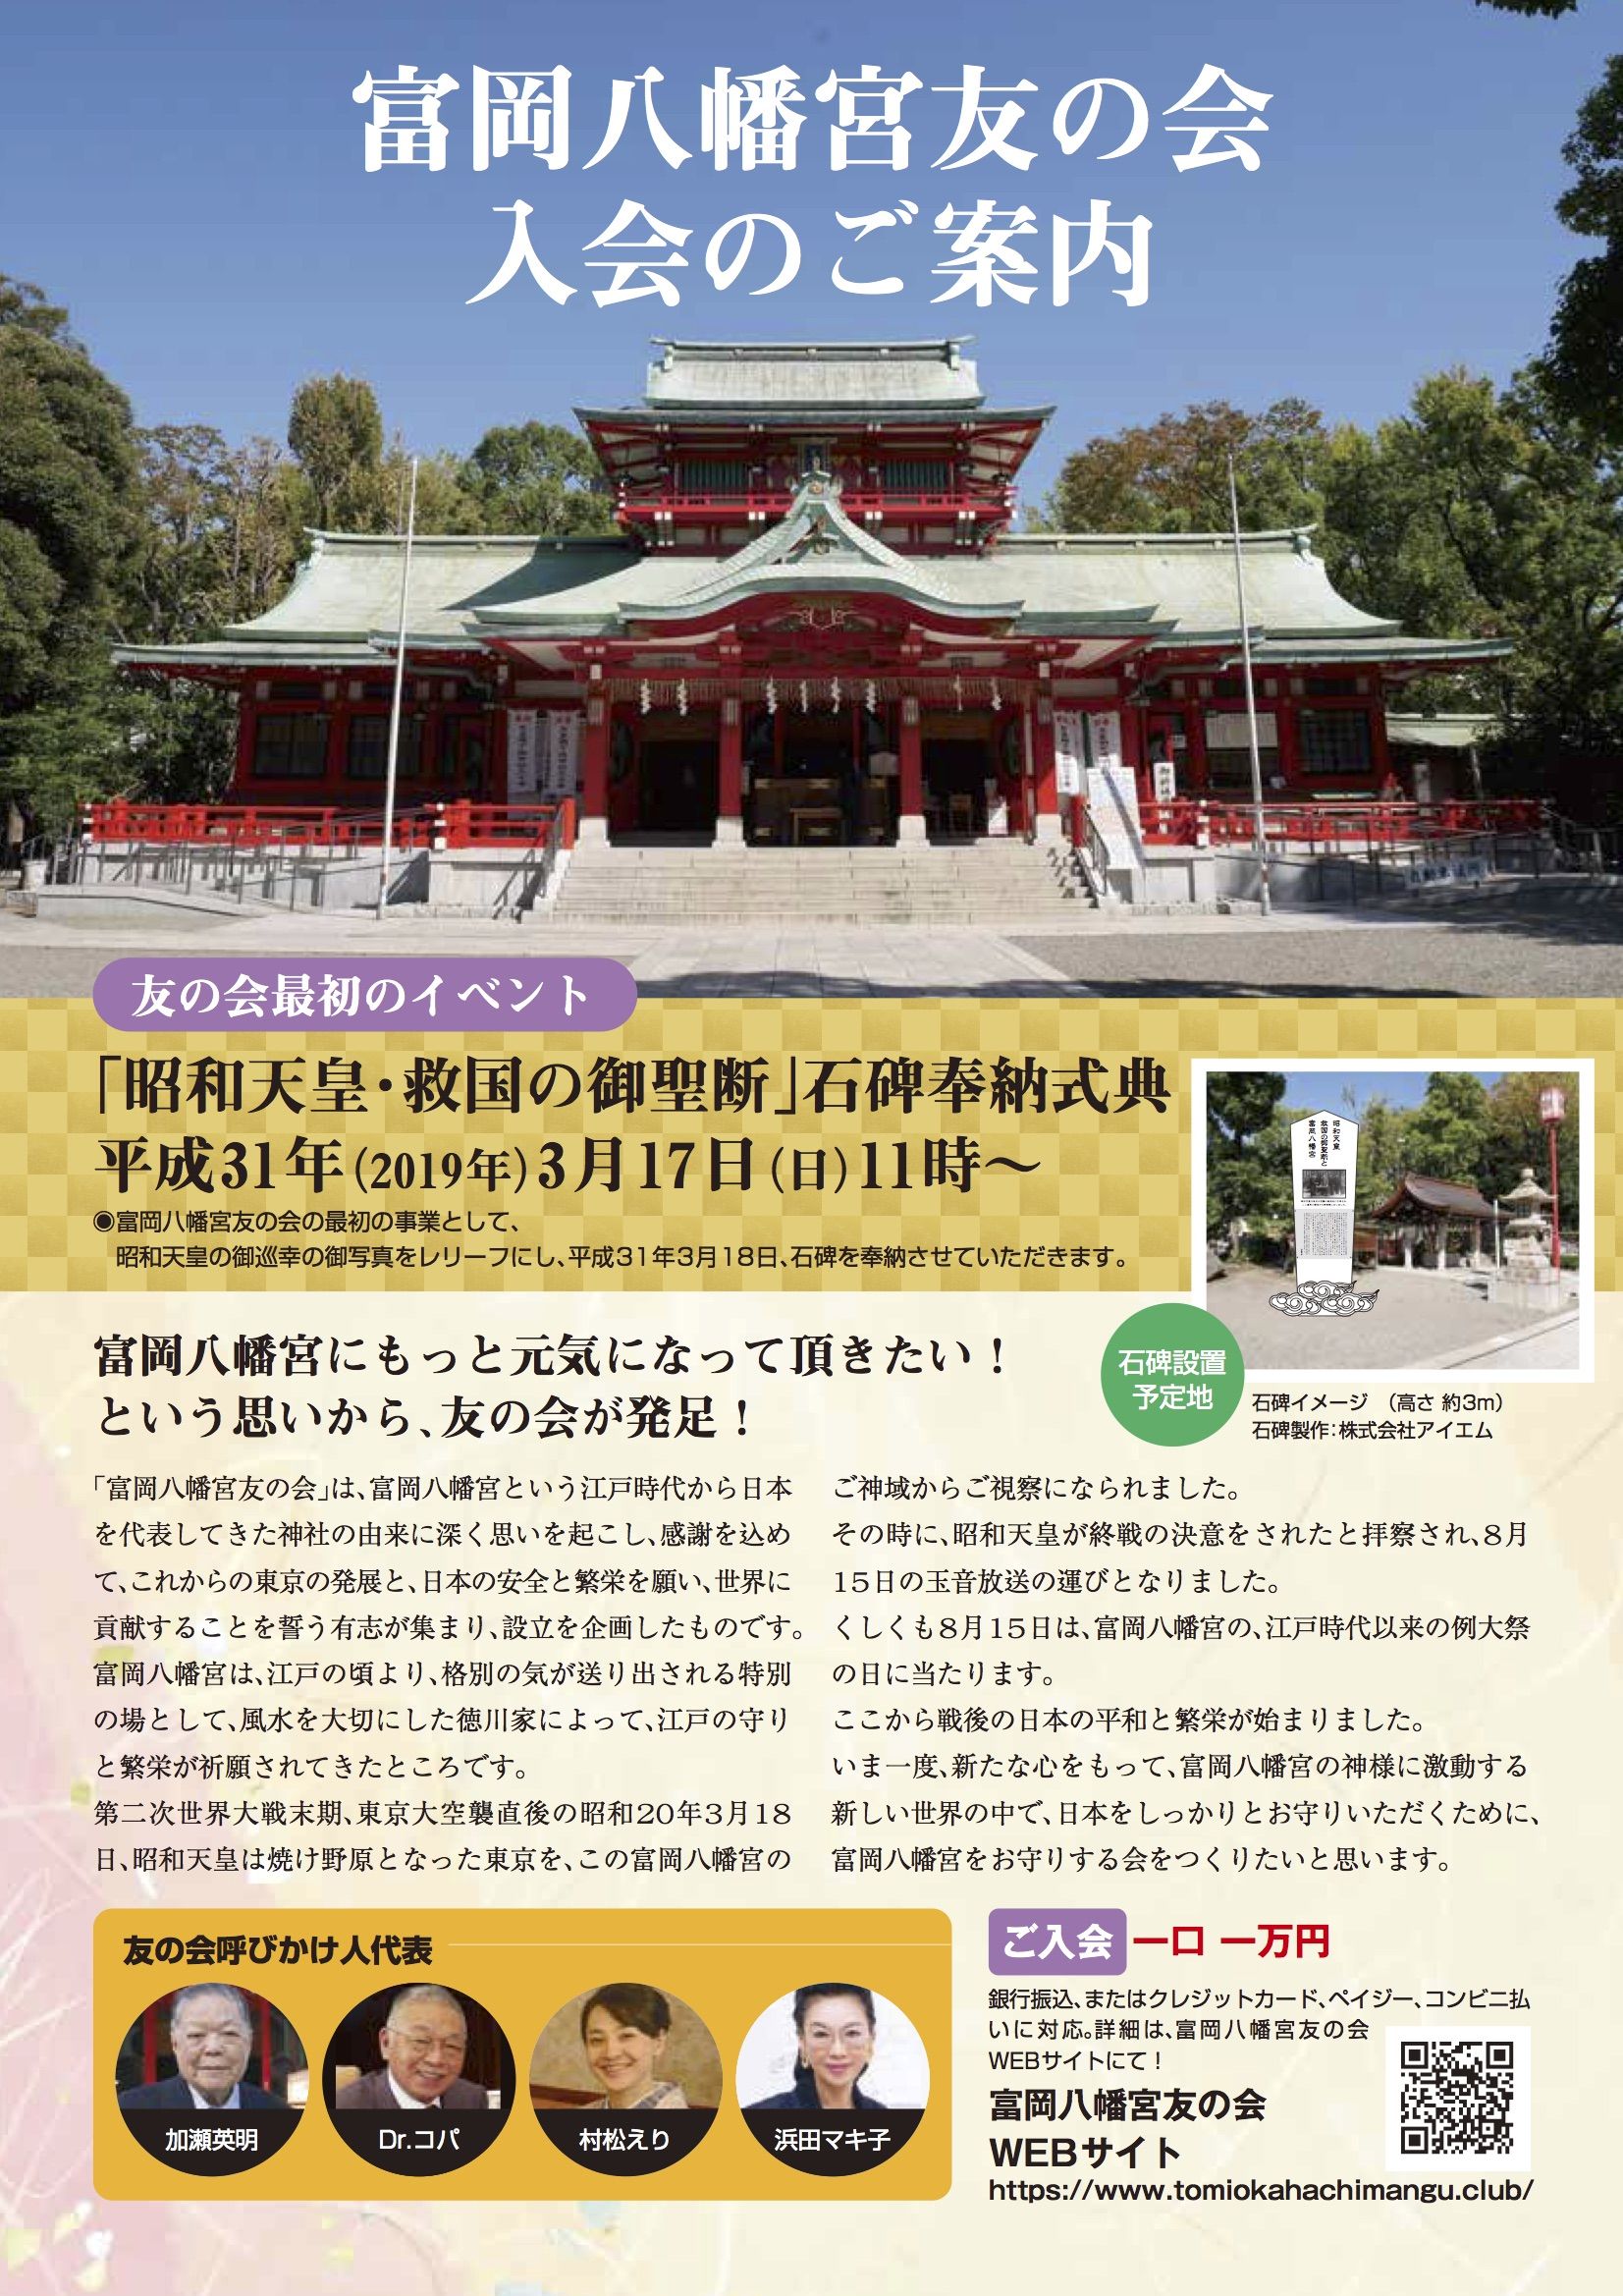 富岡八幡宮こそ実は江戸一番のパワースポット 浜田マキ子 未来ネット のブログ 再見 楽天ブログ